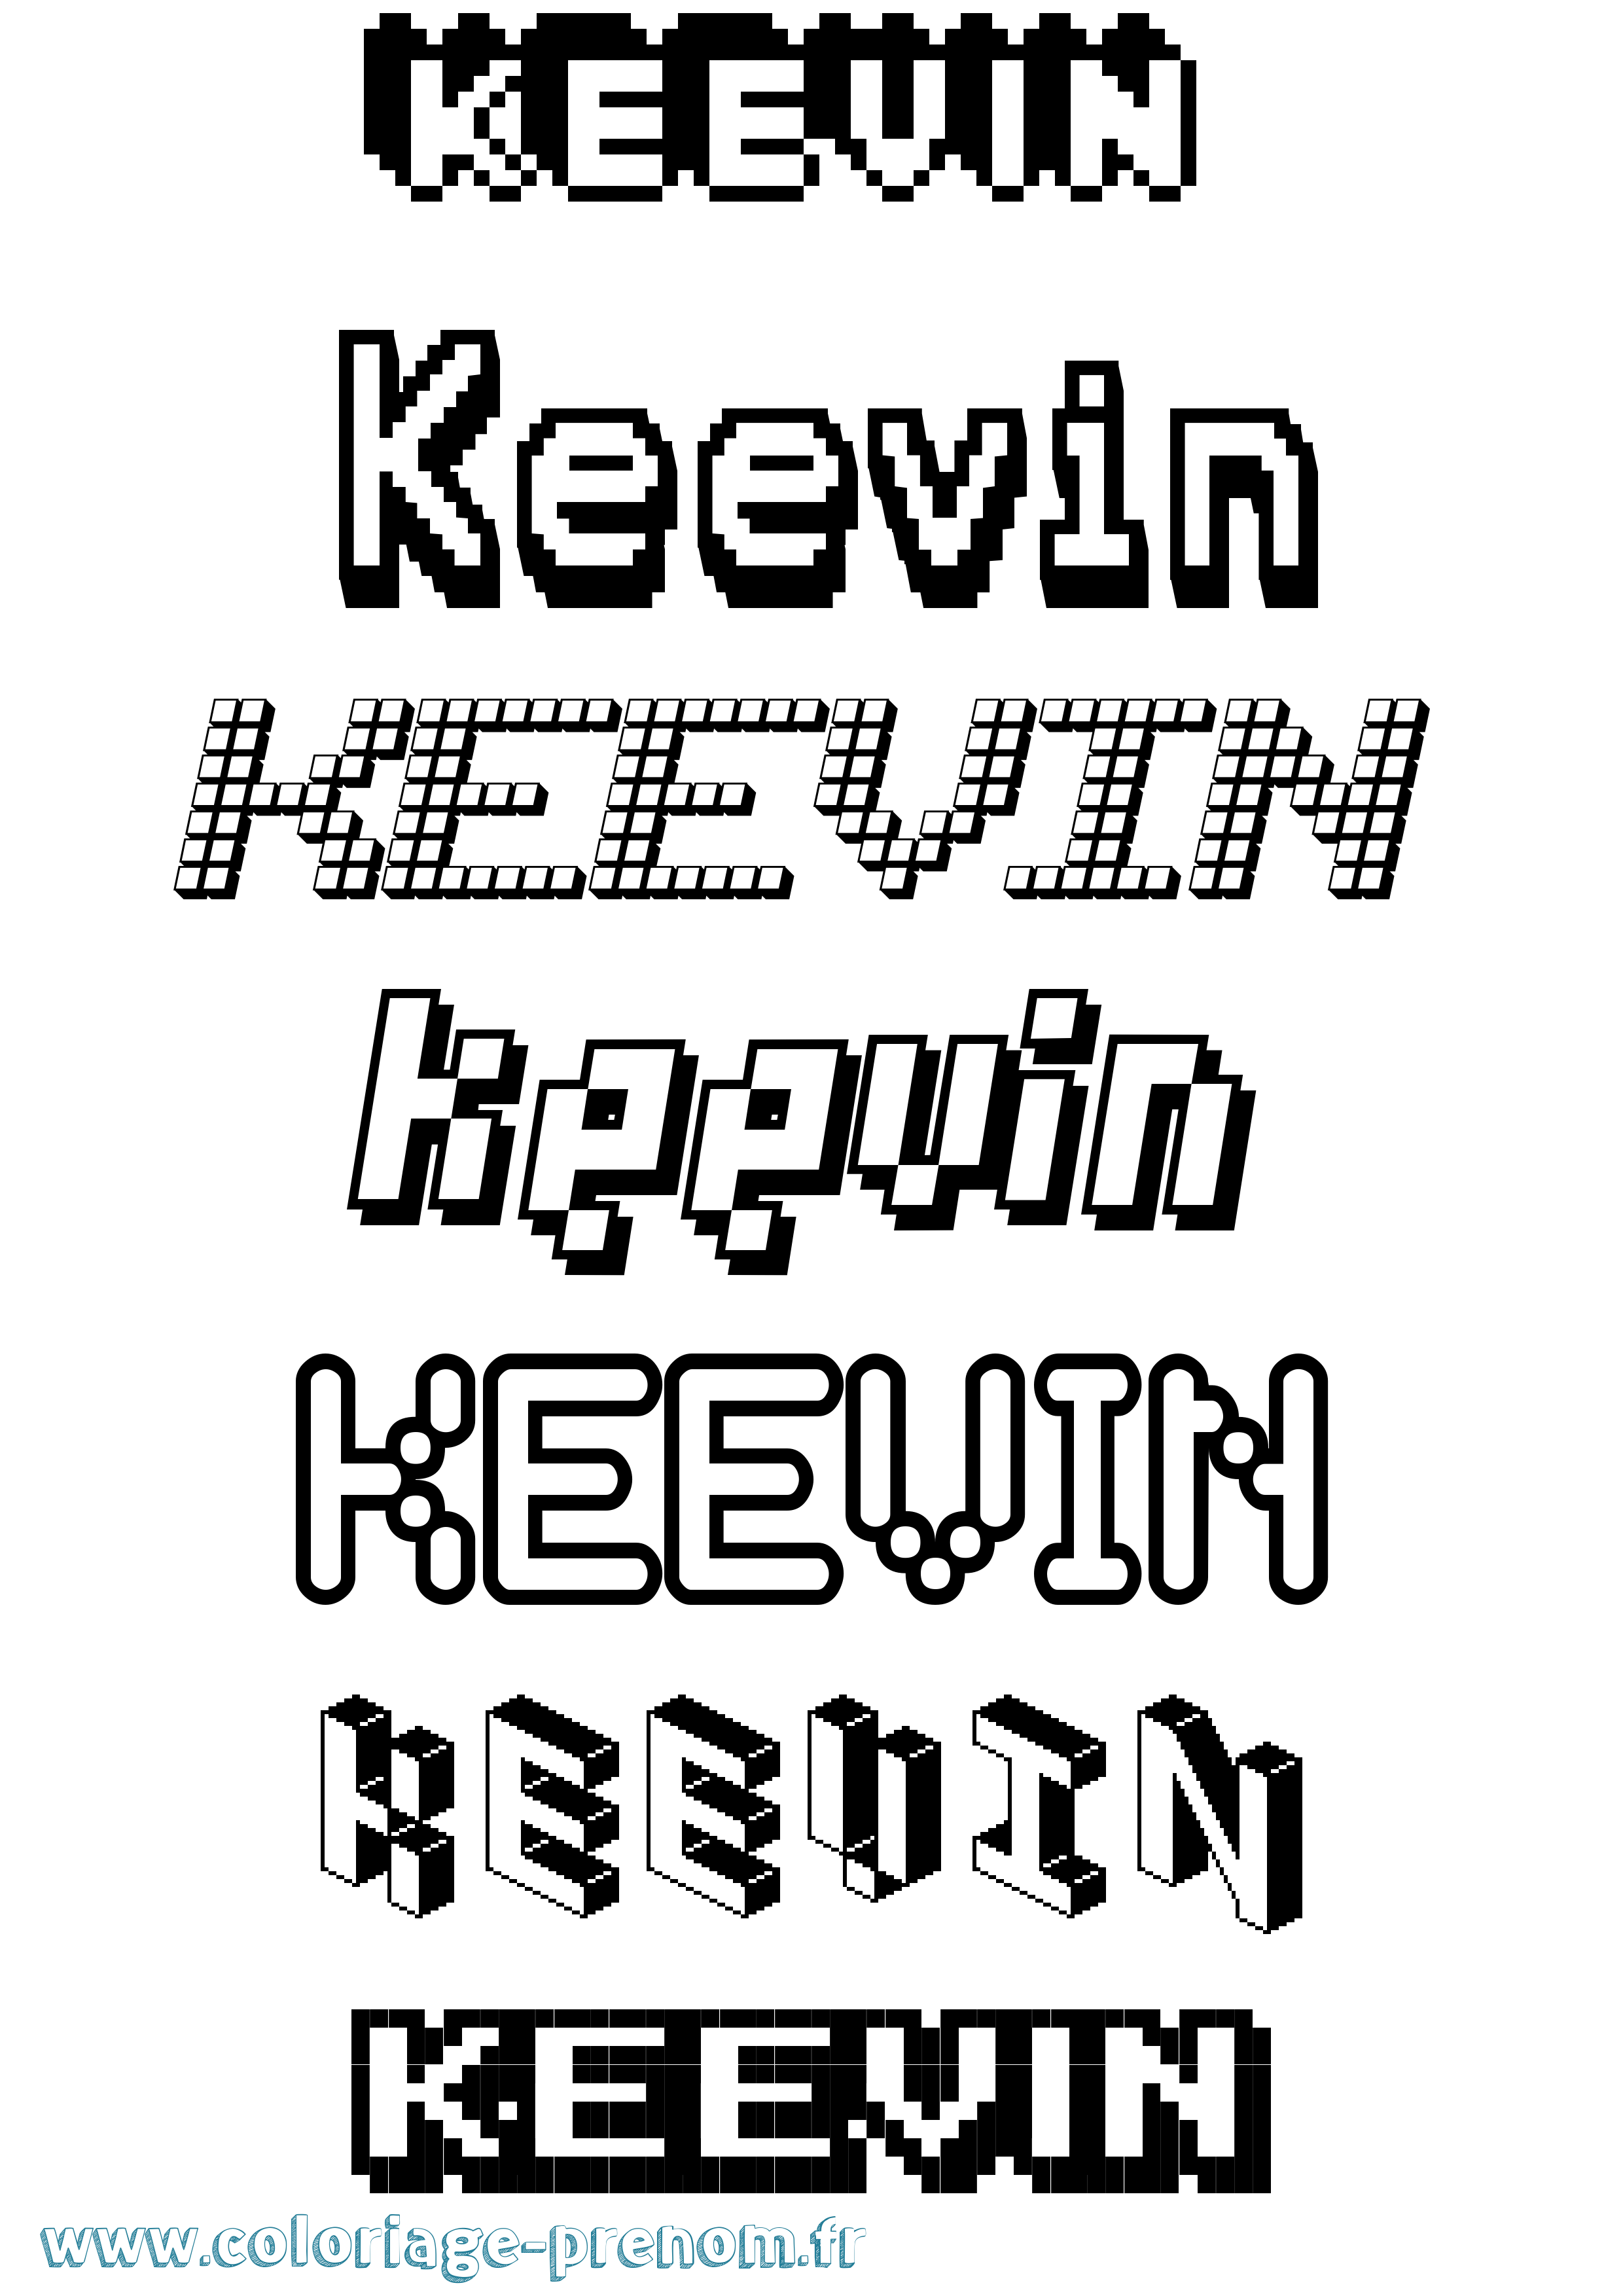 Coloriage prénom Keevin Pixel